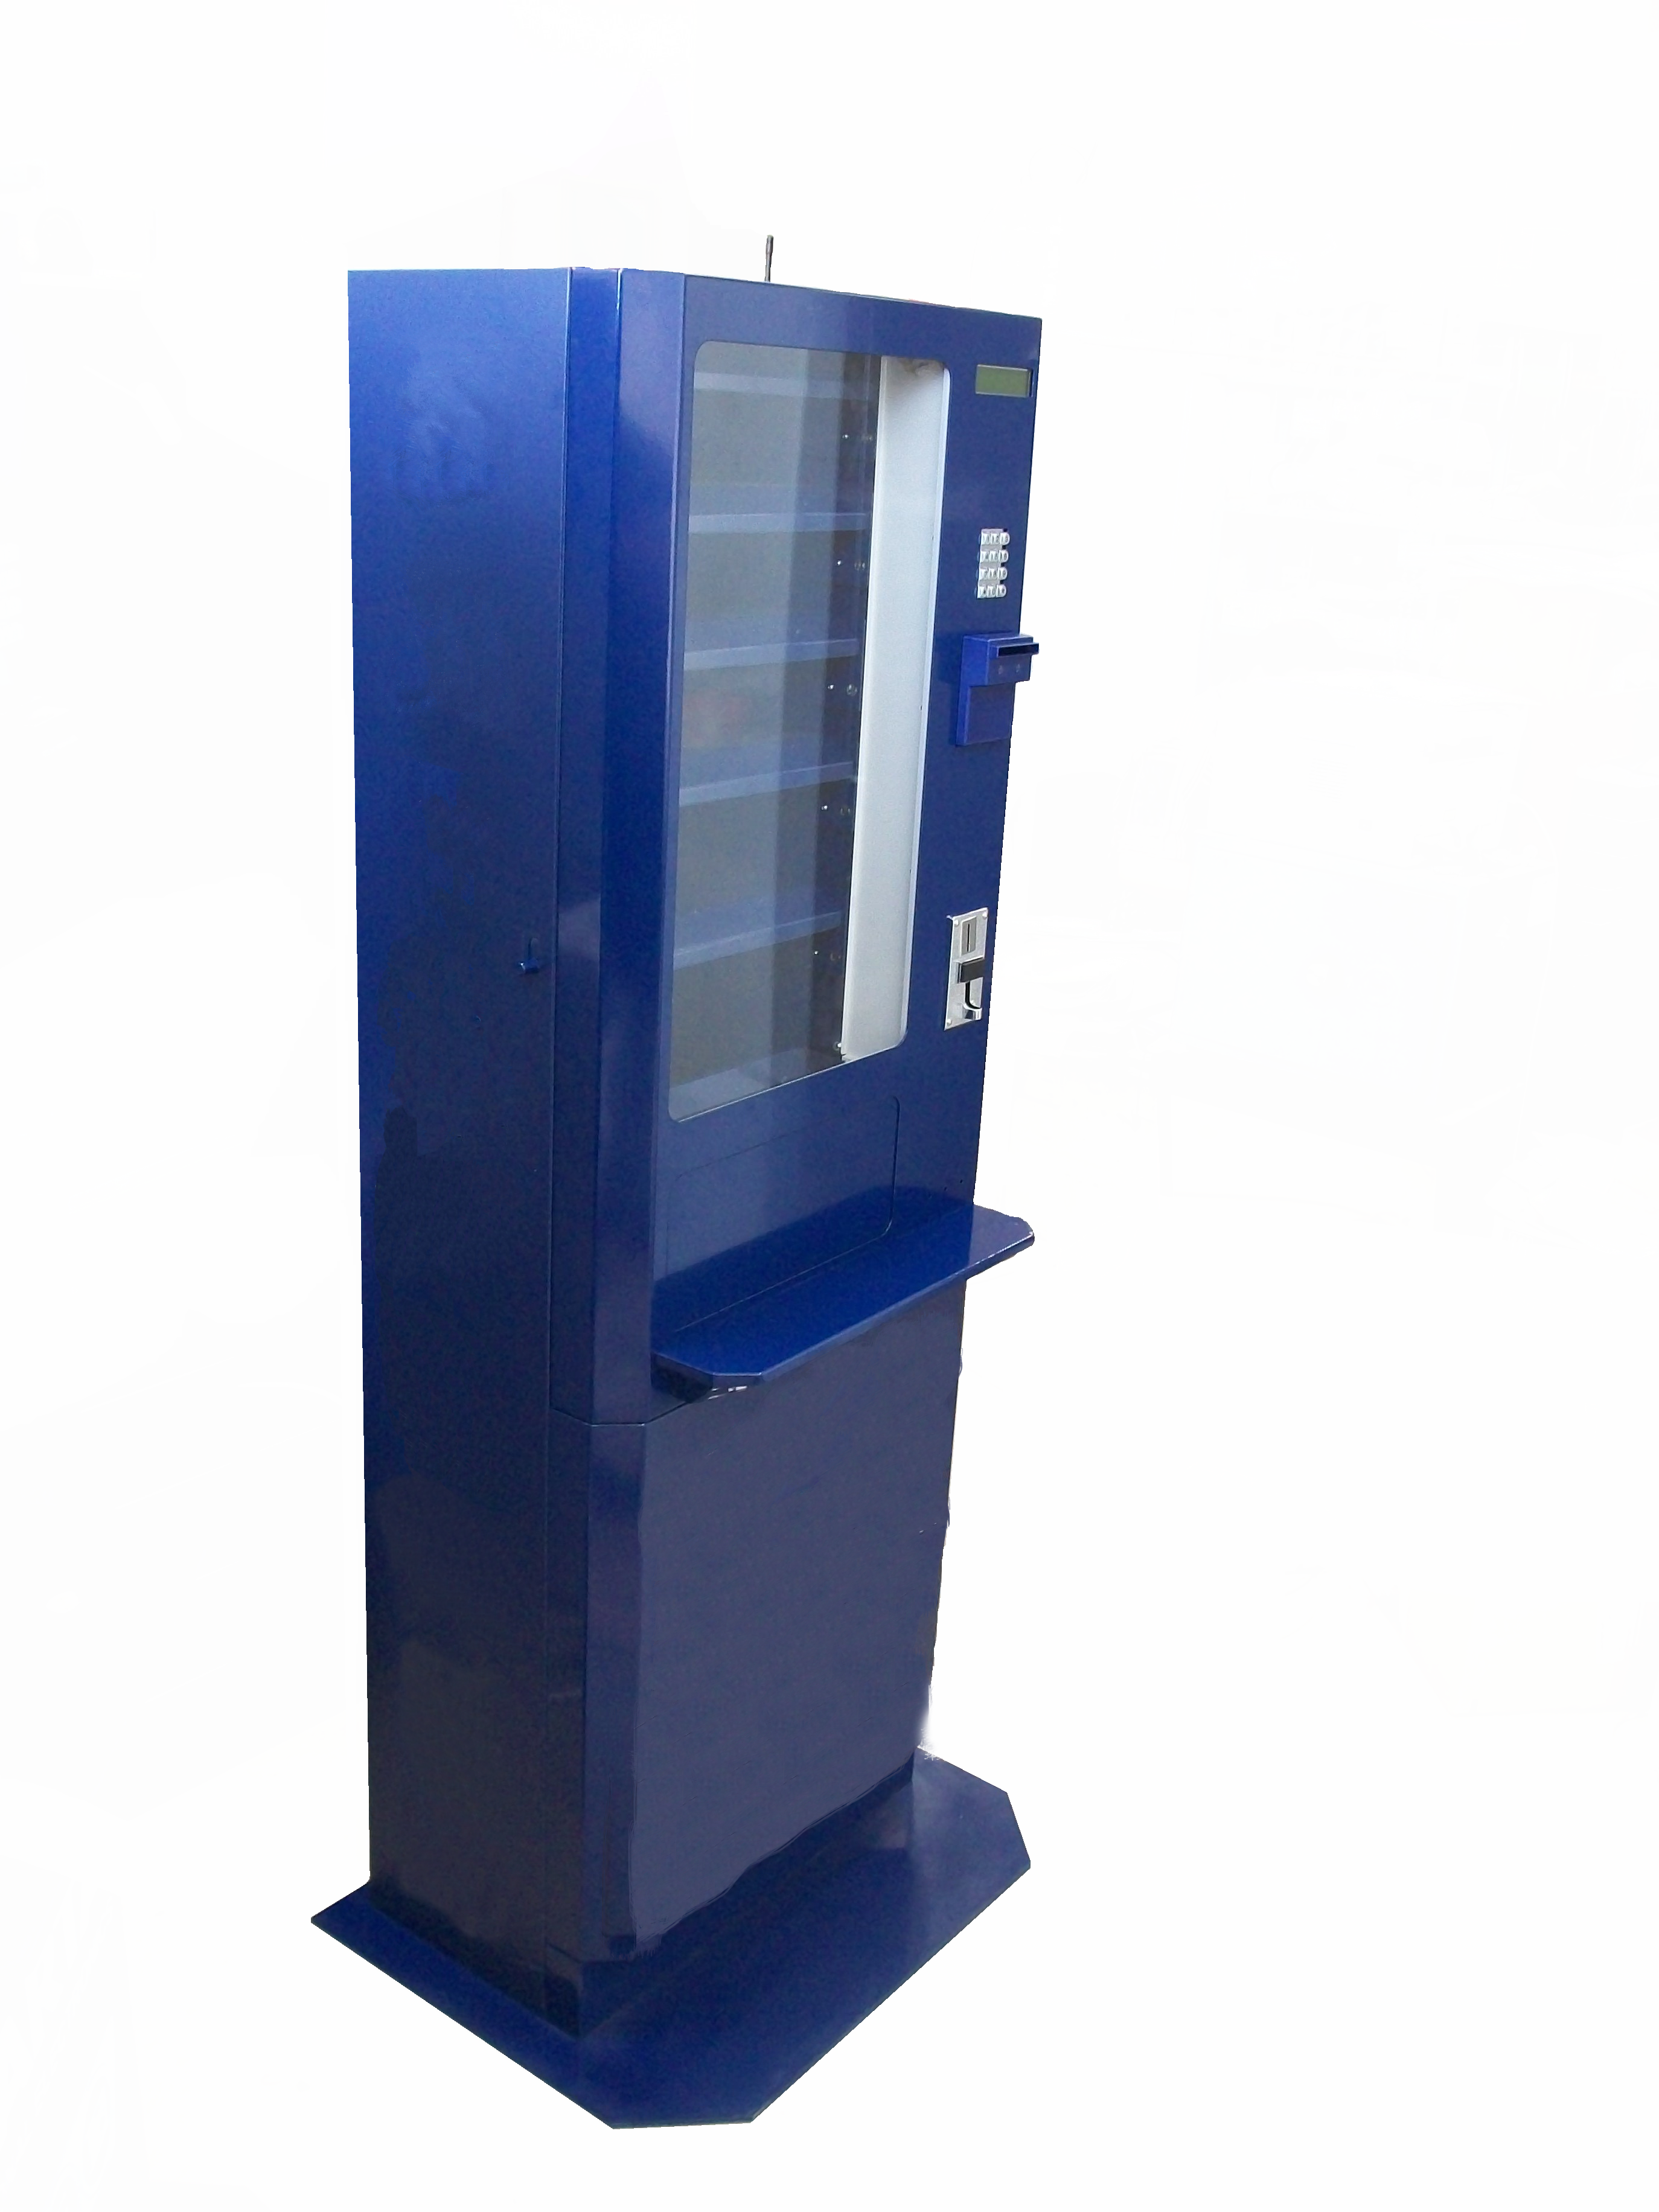 Снековый торговый автомат IVT-SE64 напольного исполнения для продажи 64 видов товаров